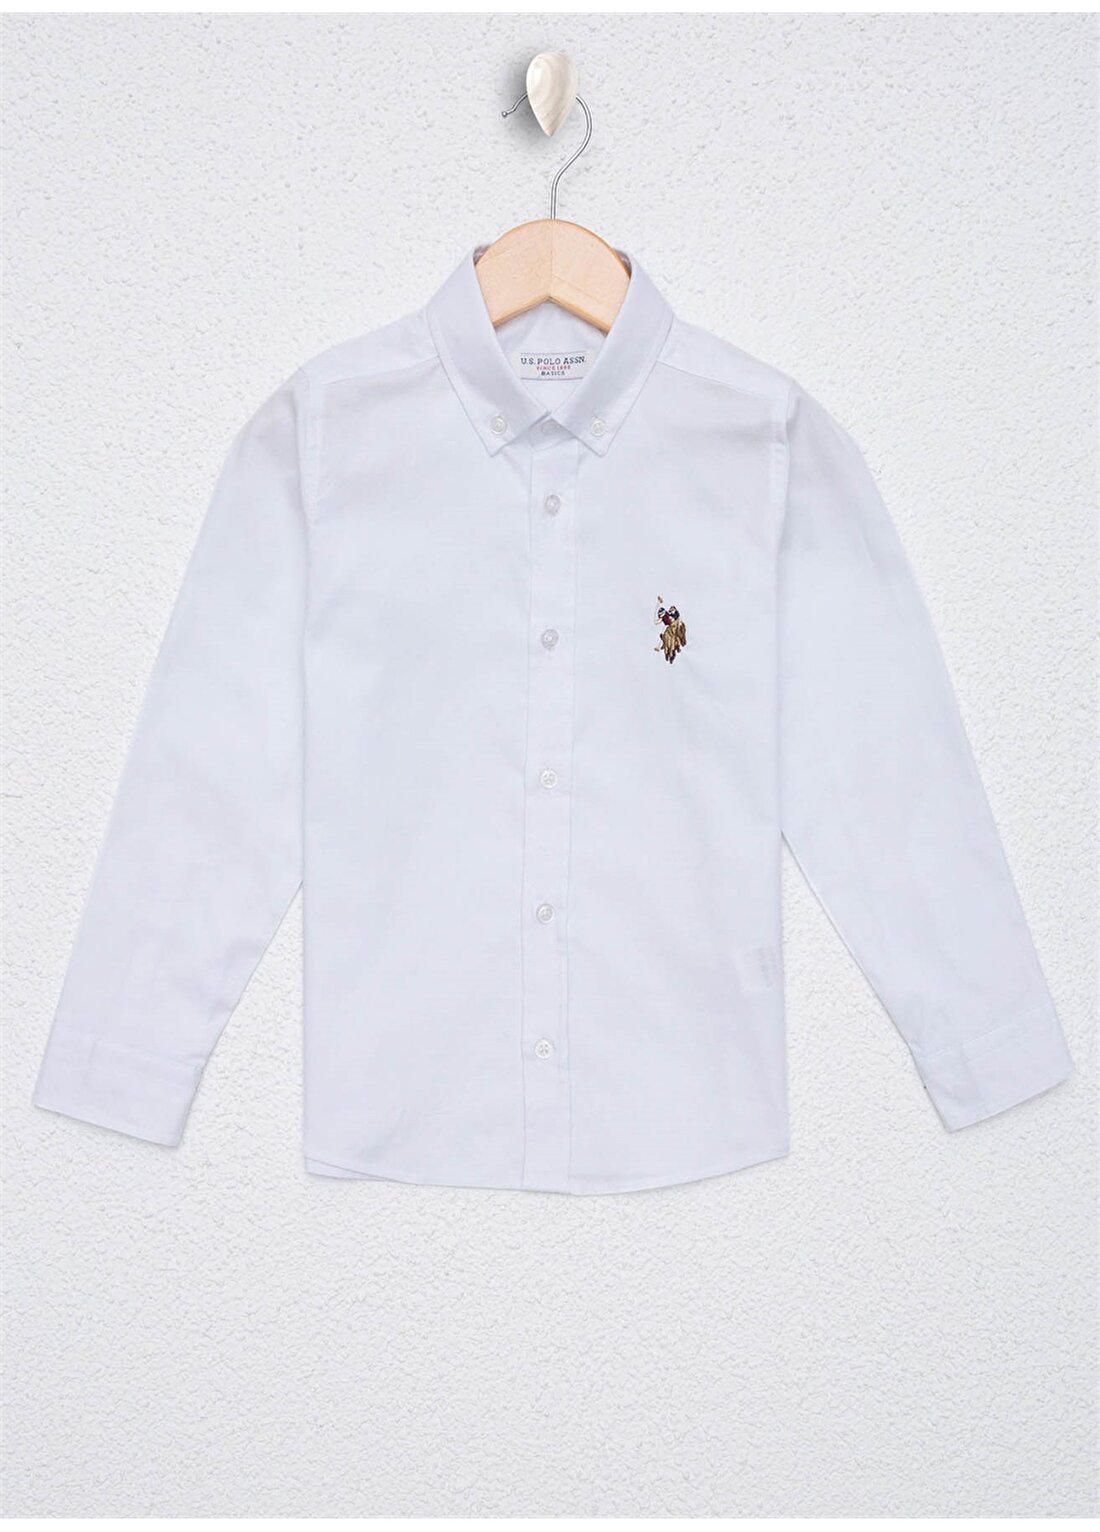 U.S. Polo Assn. Desenli Beyaz Erkek Çocuk Gömlek CEDCOLORKIDS020K-VR013